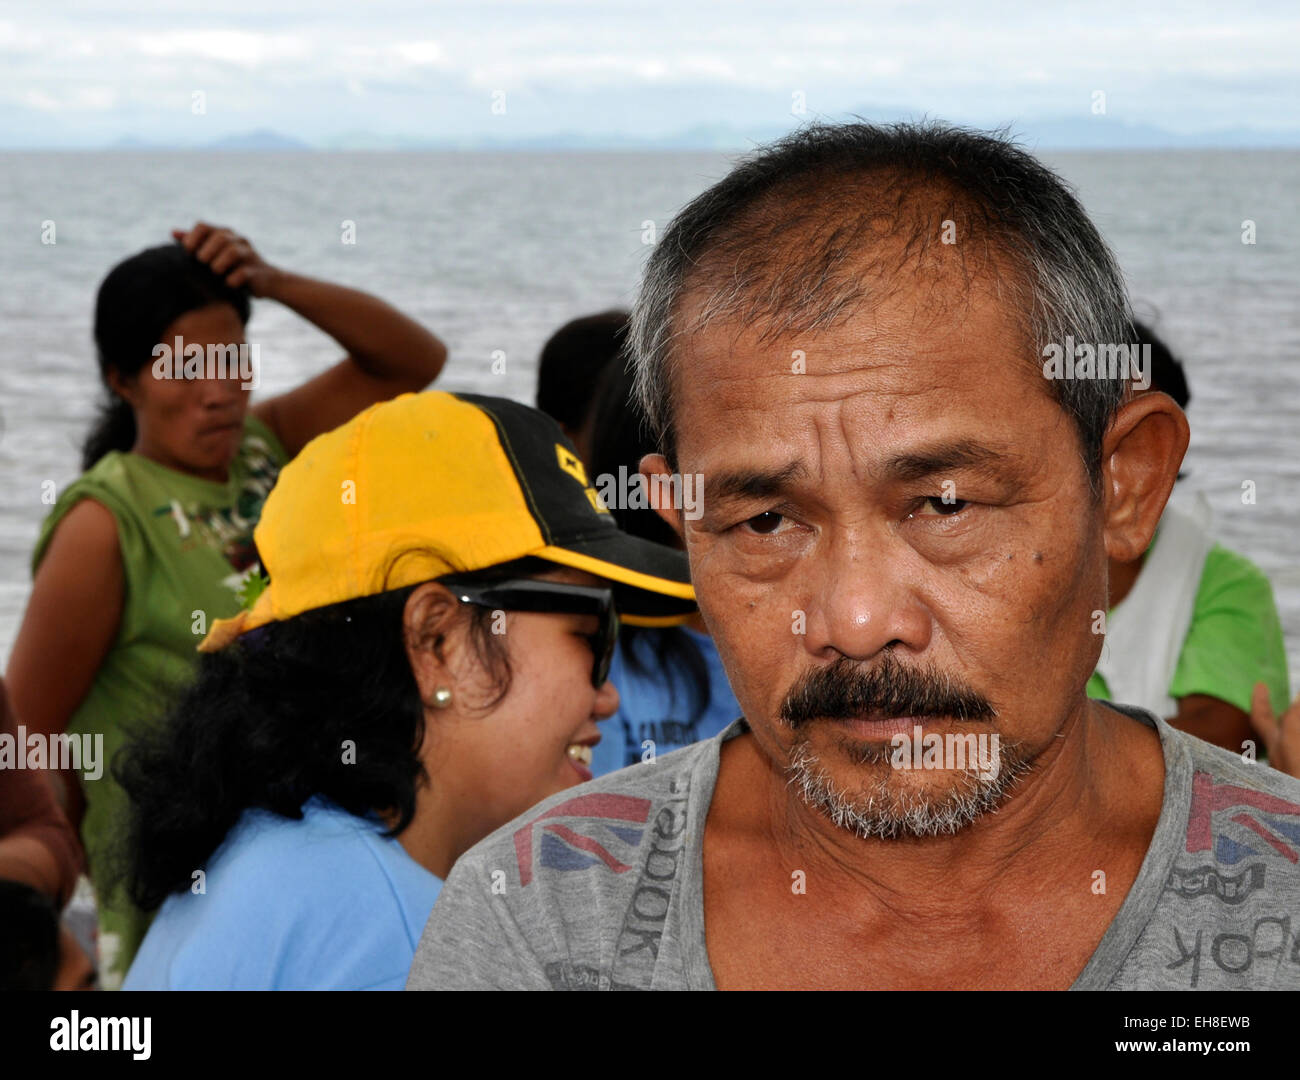 Fischer Osias, 54 Jahre alten Vater von 9 Kindern überlebt, aber alles verloren wegen Taifun Haidan in Tacloban, Philippinen, am 10. Februar 2015. Taifun Haidan war der größte Taifun in den letzten Jahren, die die zentralen Philippinen im Jahr 2013 verwüstet, so dass die mehr als 7.000 Menschen tot oder vermisst. Mehr als 1 Million Häuser wurden in der Folge ganz oder teilweise beschädigt. (CTK Foto/Tereza Supova) Stockfoto